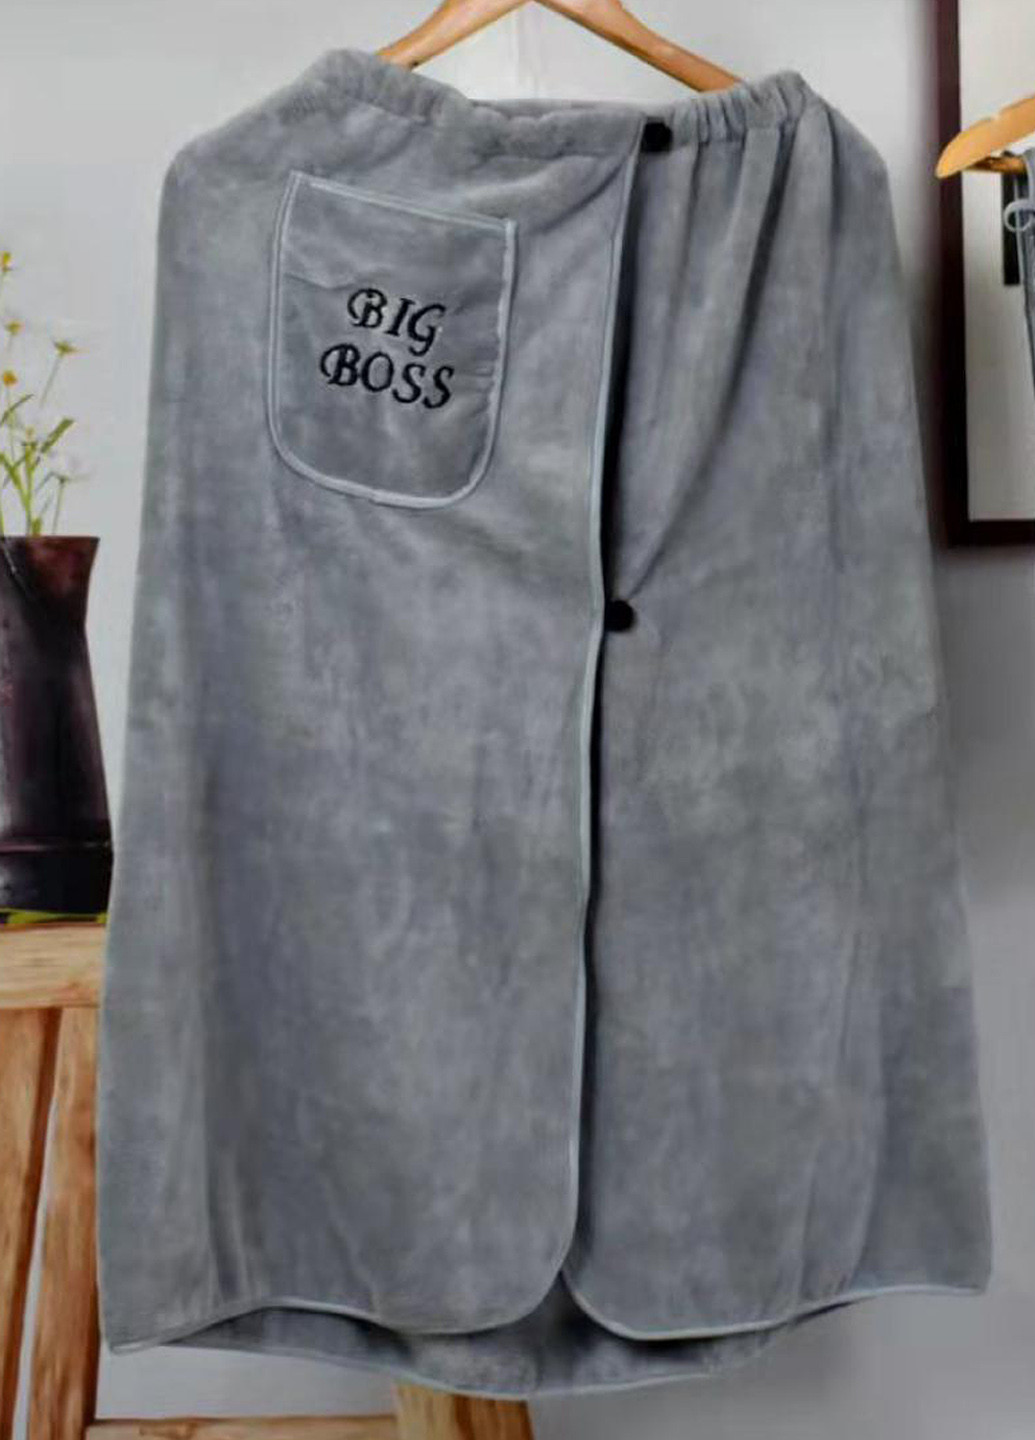 Homedec мужской набор для бани (полотенце юбка и полотенце для лица), микрофибра однотонный серый производство - Турция